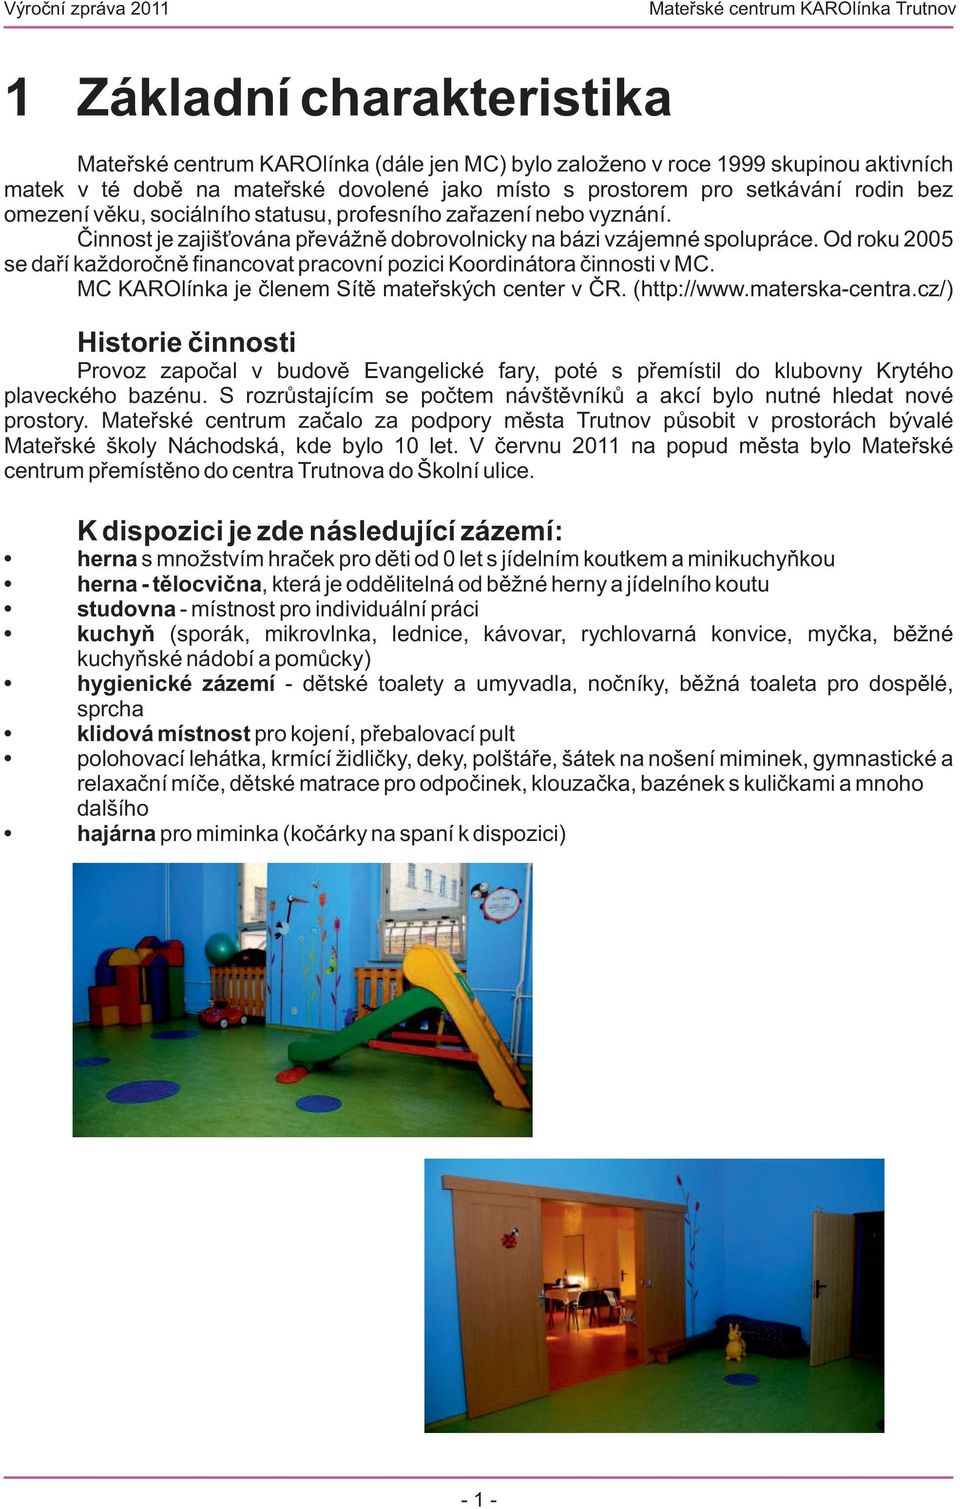 Od roku 2005 se daří každoročně financovat pracovní pozici Koordinátora činnosti v MC. MC KAROlínka je členem Sítě mateřských center v ČR. (http://www.materska-centra.